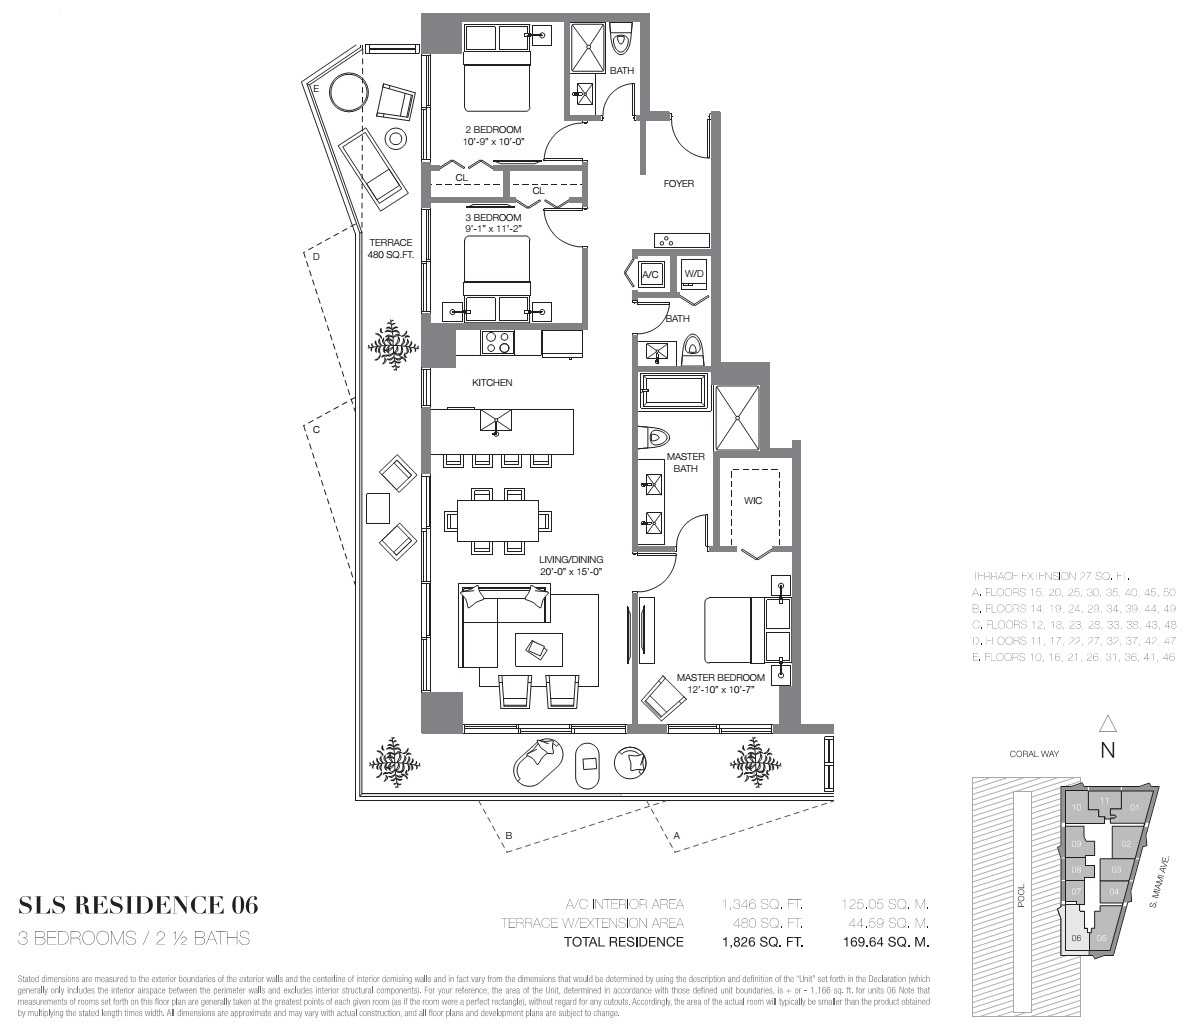 SLS Brickell Residence 06